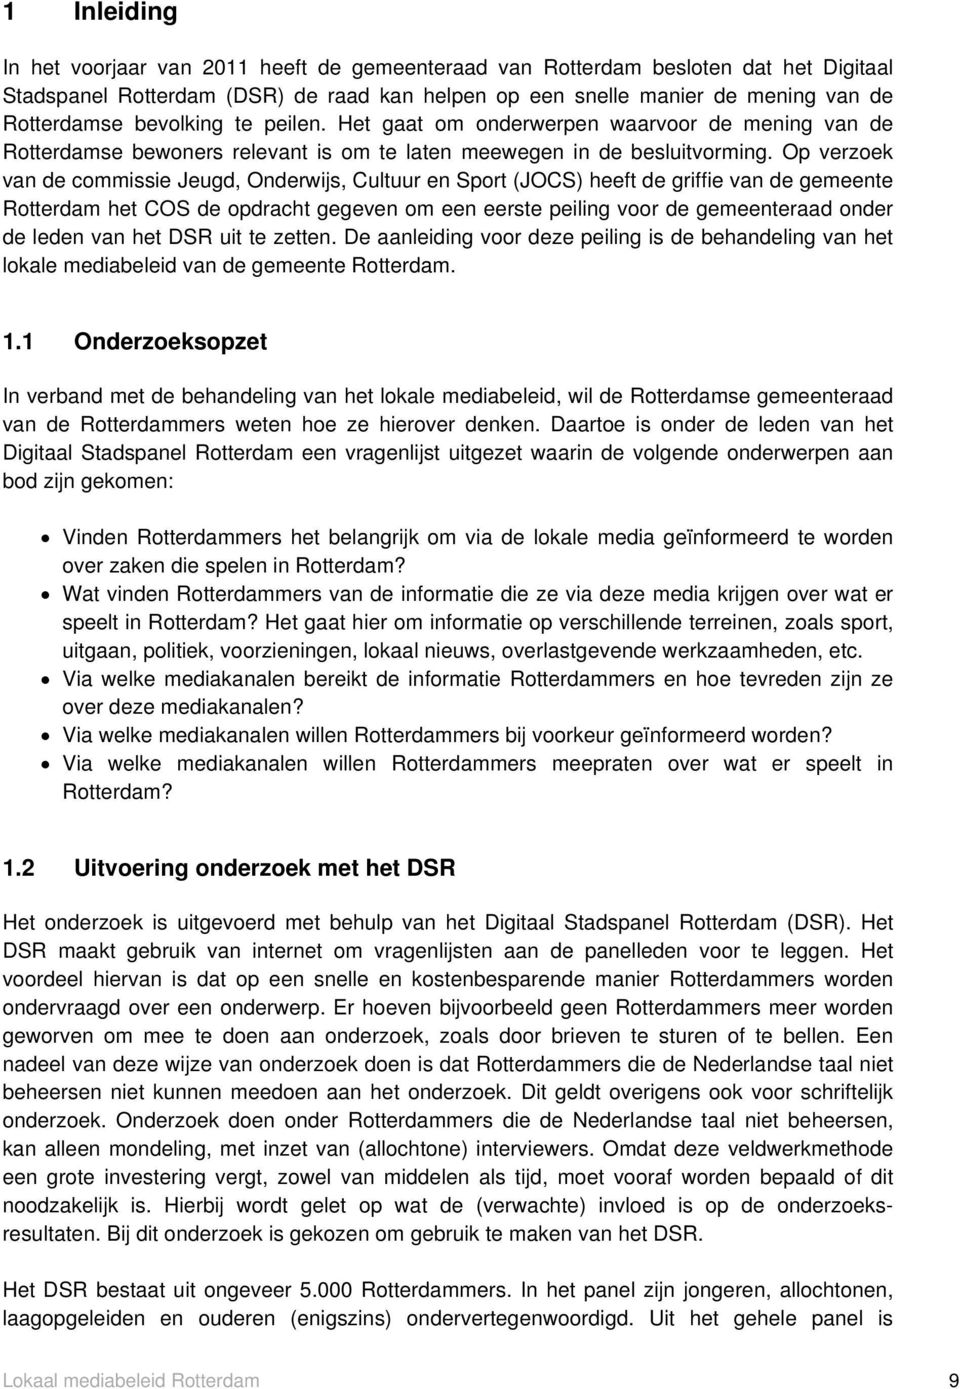 Op verzoek van de commissie Jeugd, Onderwijs, Cultuur en Sport (JOCS) heeft de griffie van de gemeente Rotterdam het COS de opdracht gegeven om een eerste peiling voor de gemeenteraad onder de leden